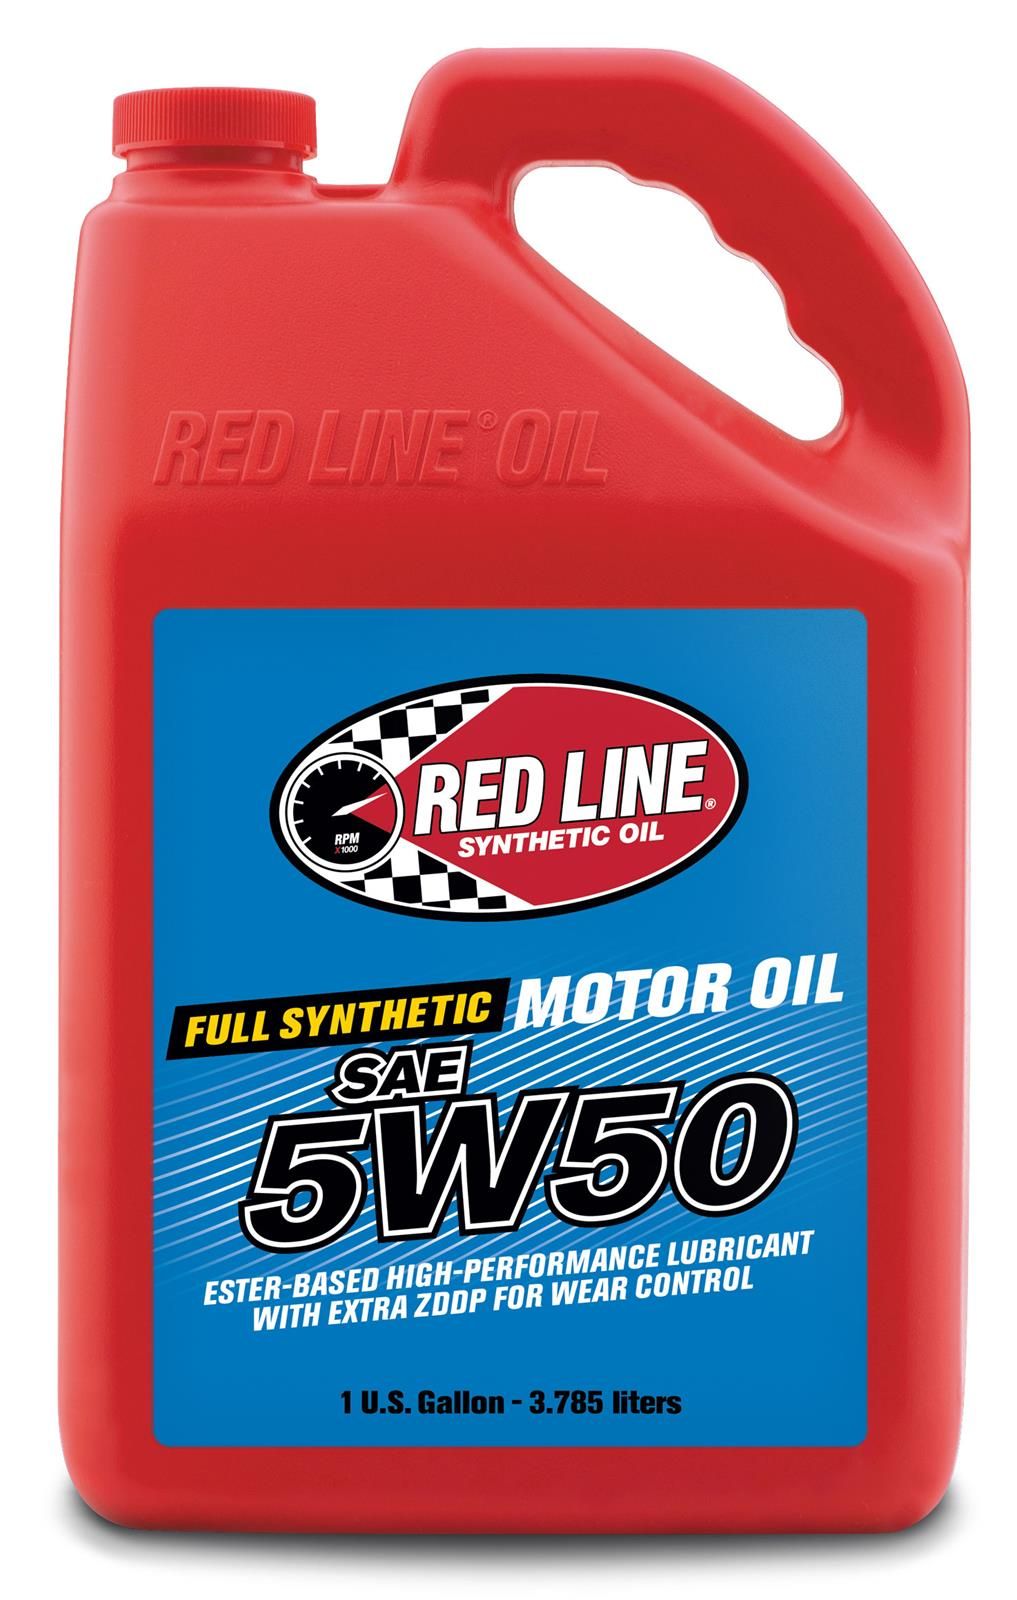 RED11605 - REDLINE MOTOR OIL 5W50